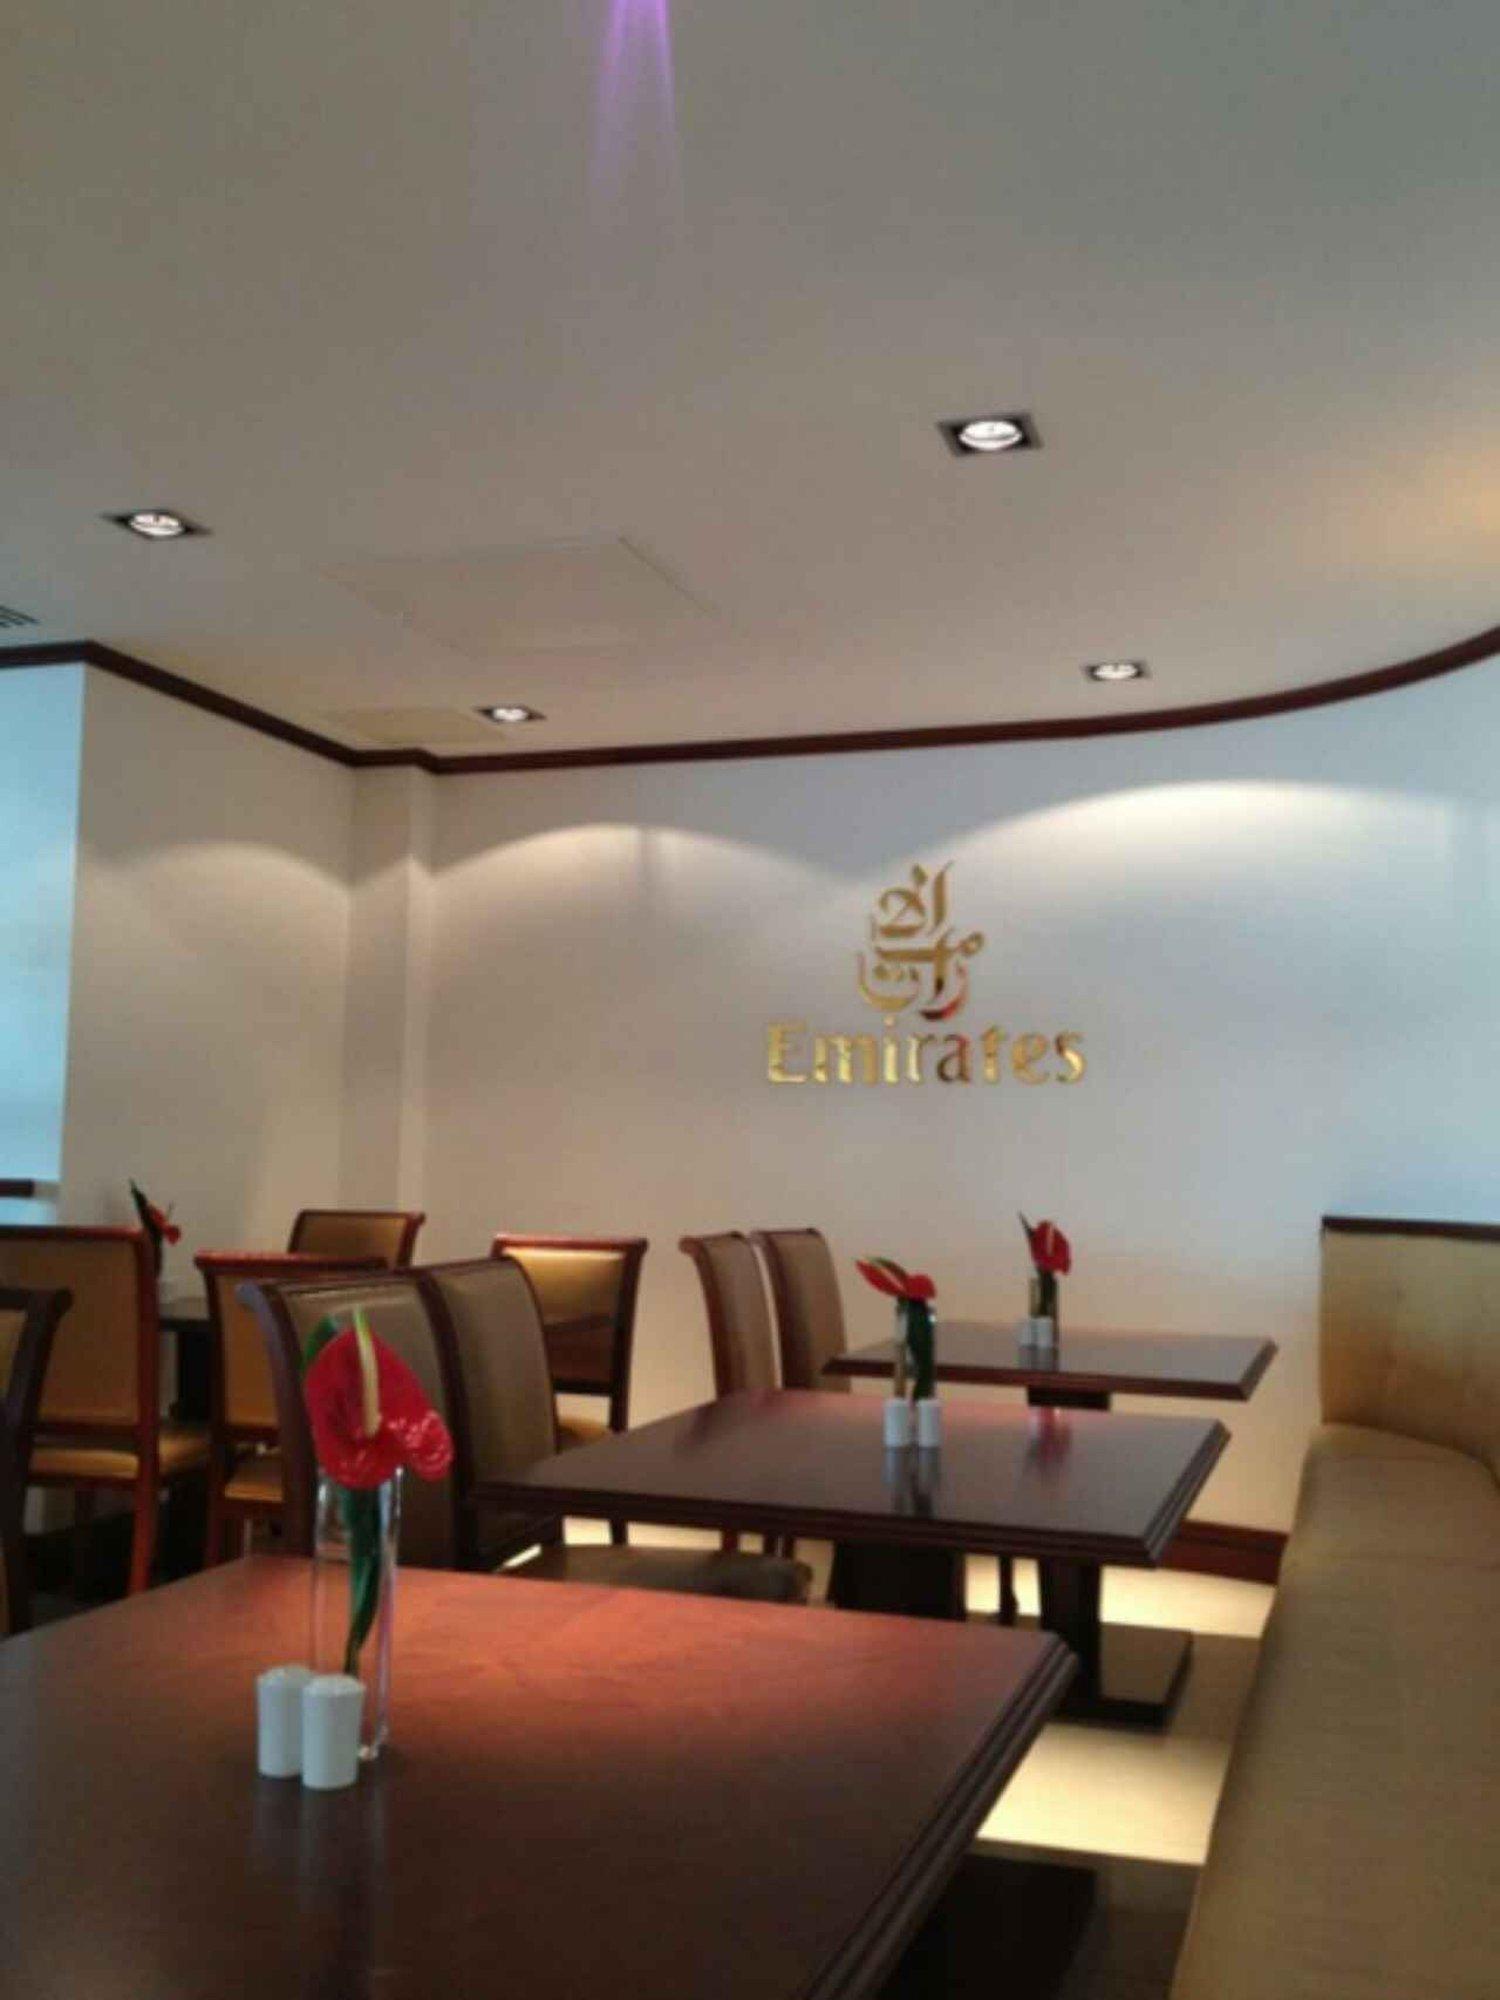 The Emirates Lounge image 5 of 10